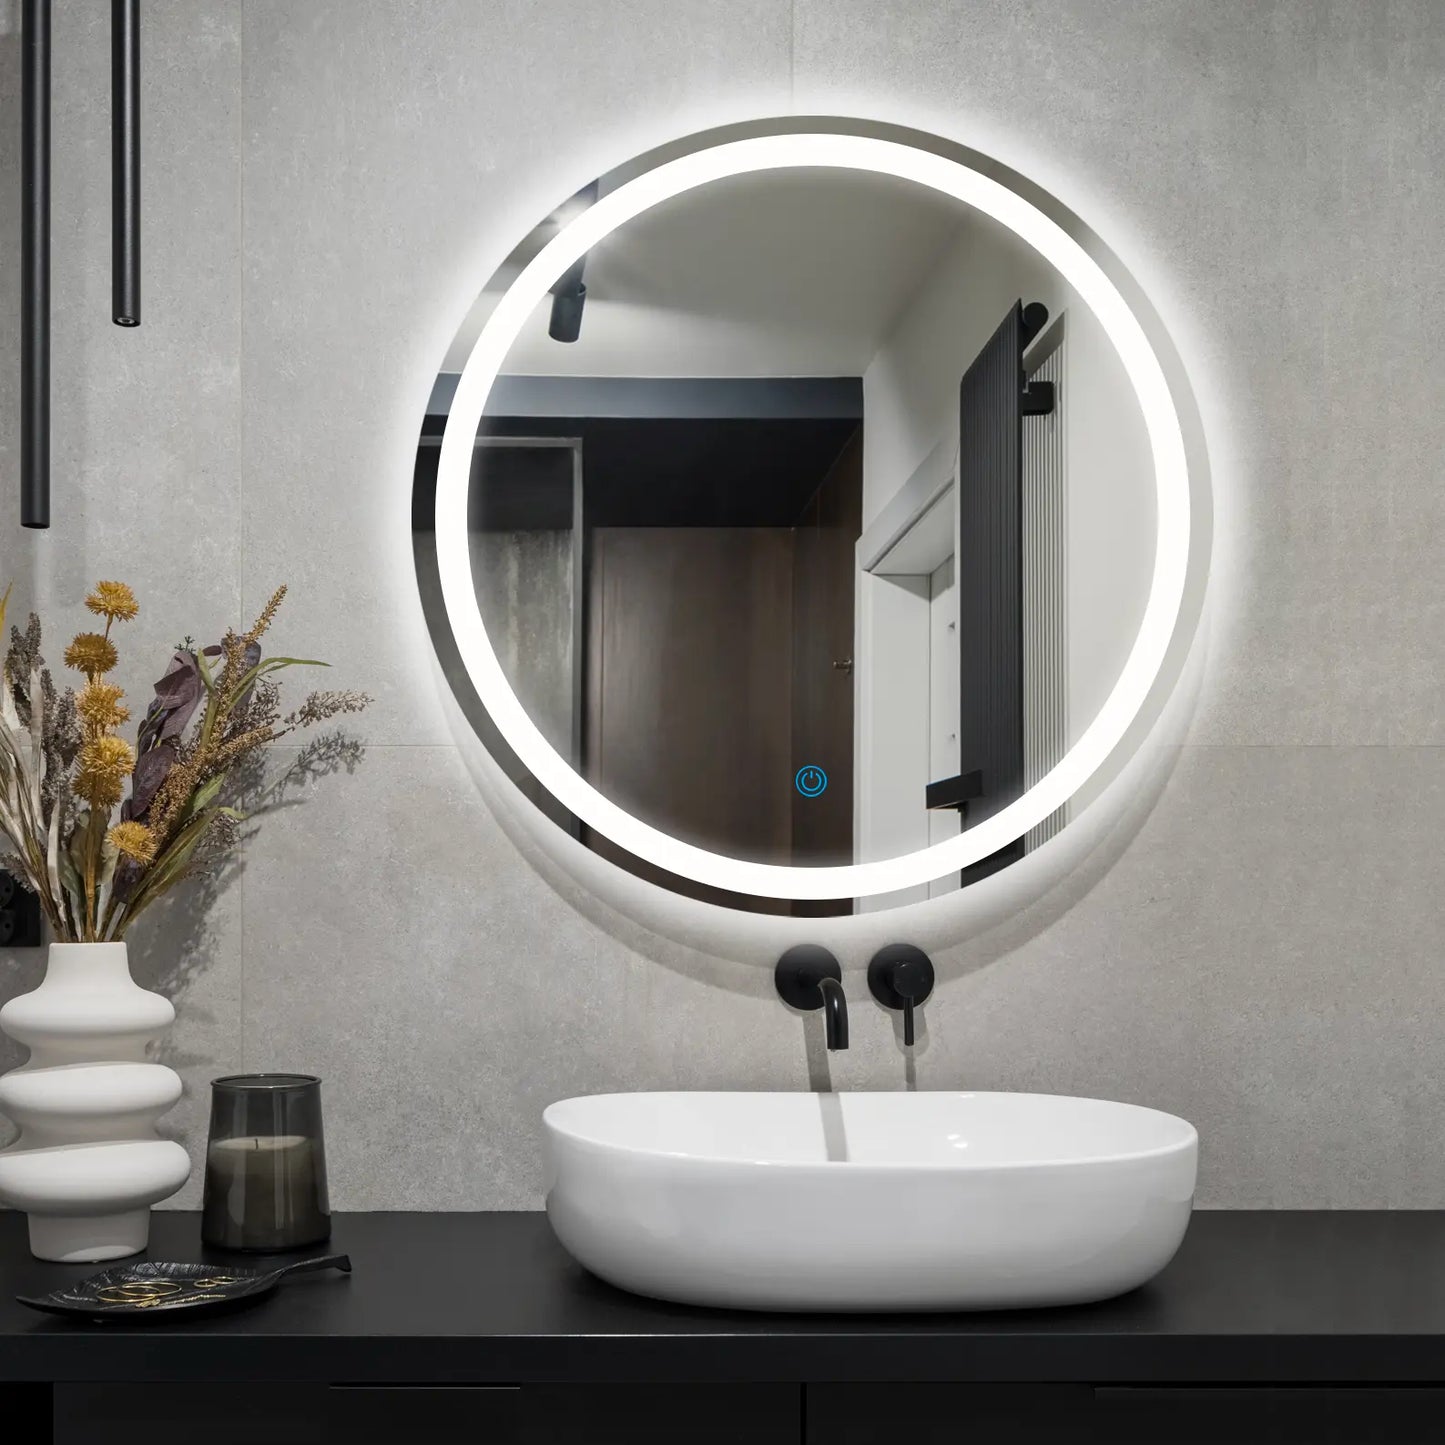 LED Lighted Round Bathroom Vanity Mirror